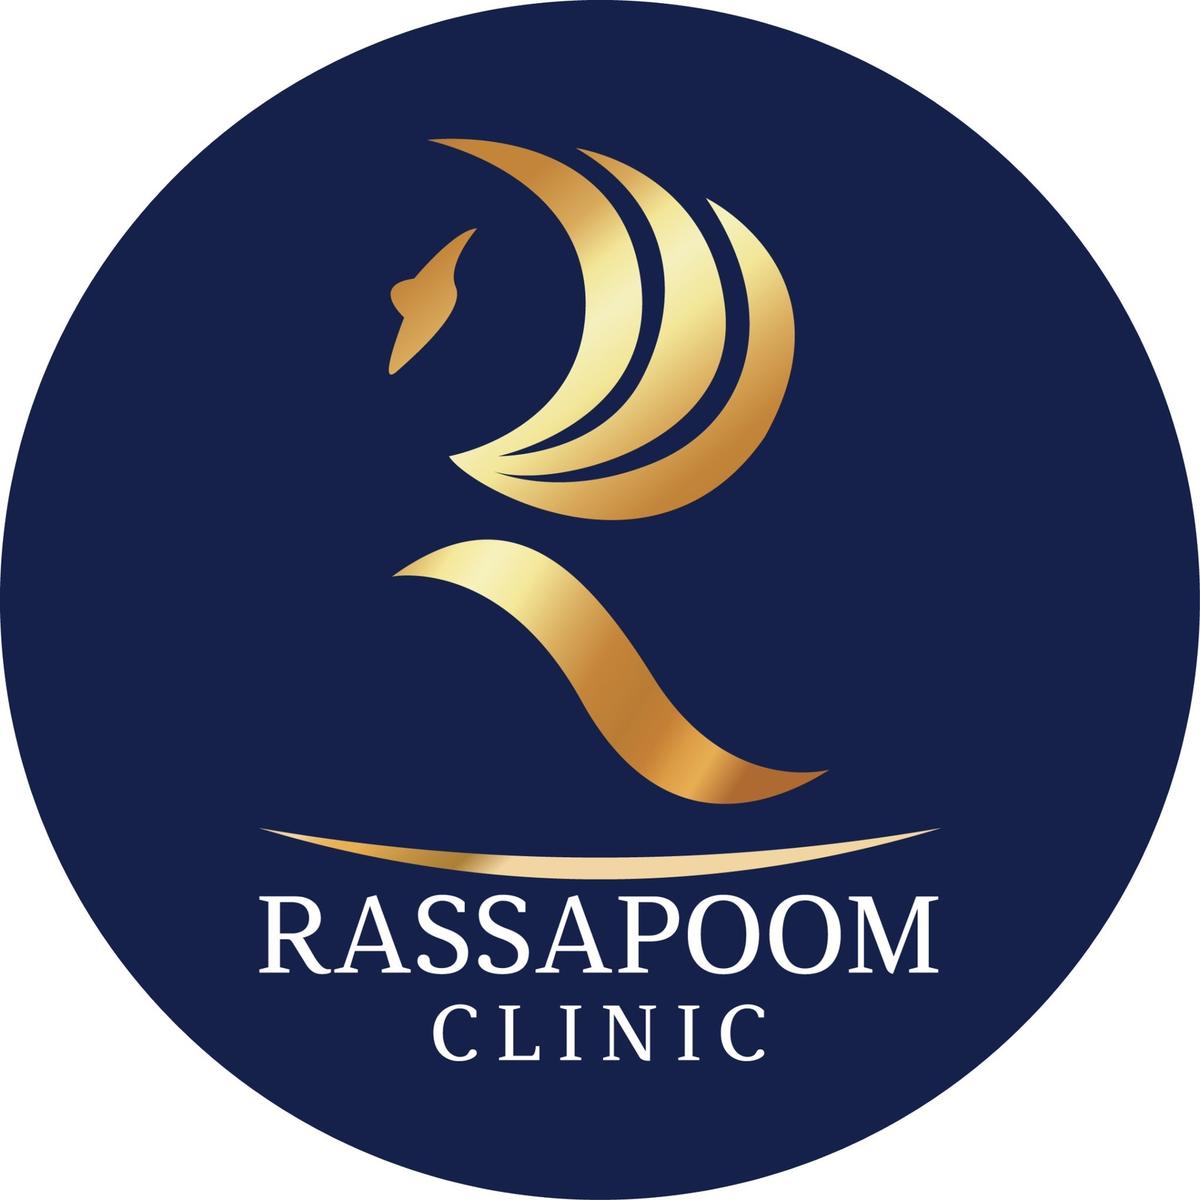 Rassapoom Club's images